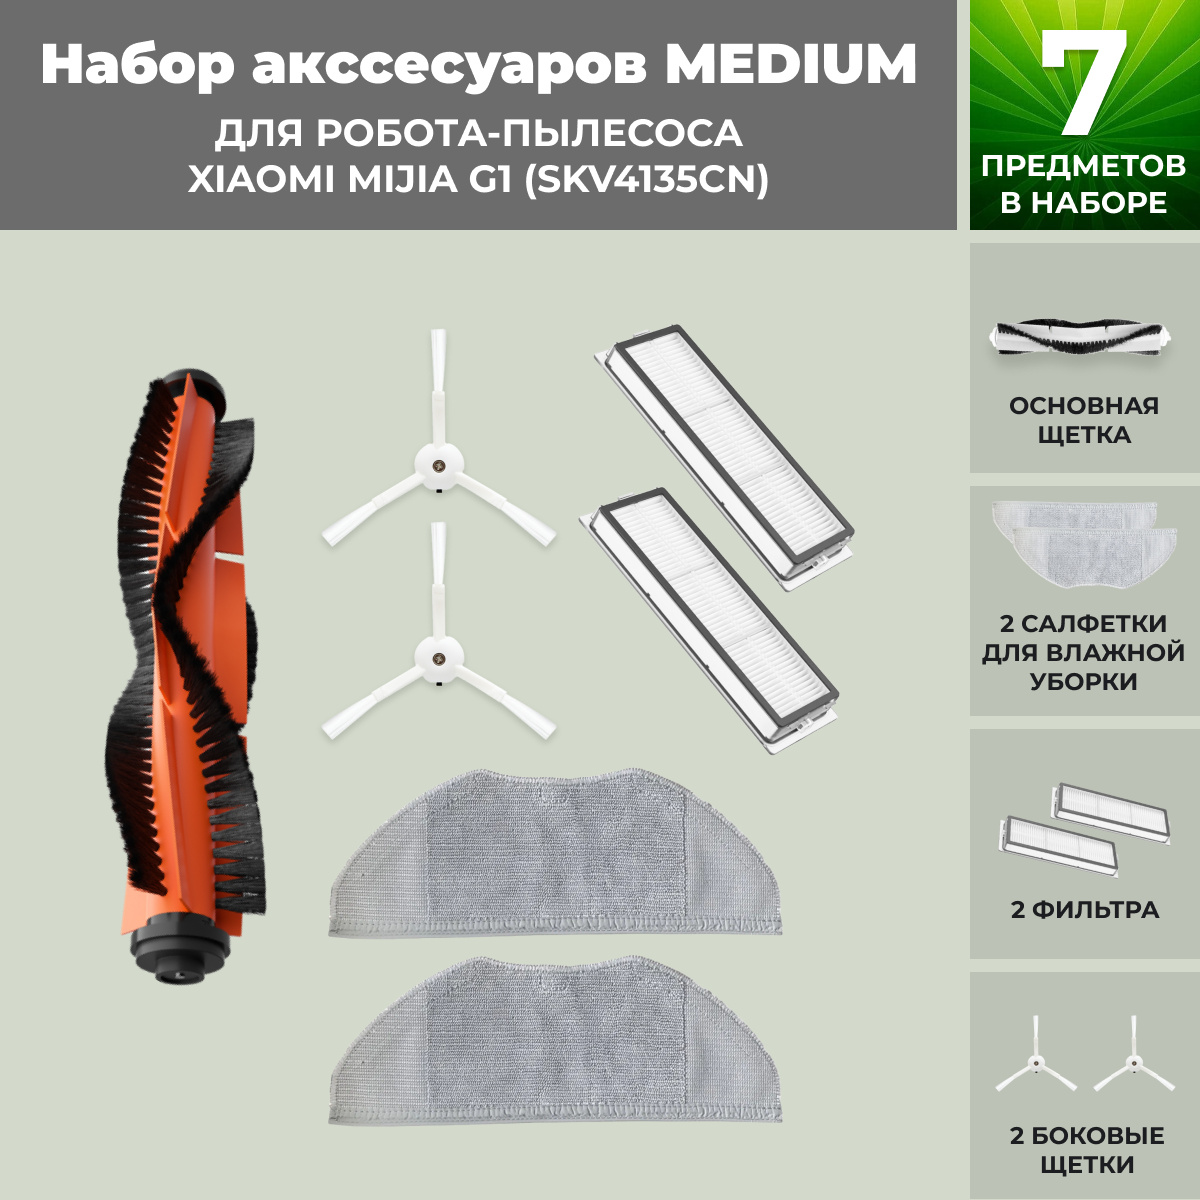 Набор аксессуаров Medium для робота-пылесоса Xiaomi Mijia G1 (SKV4135CN) 558818, фото 1